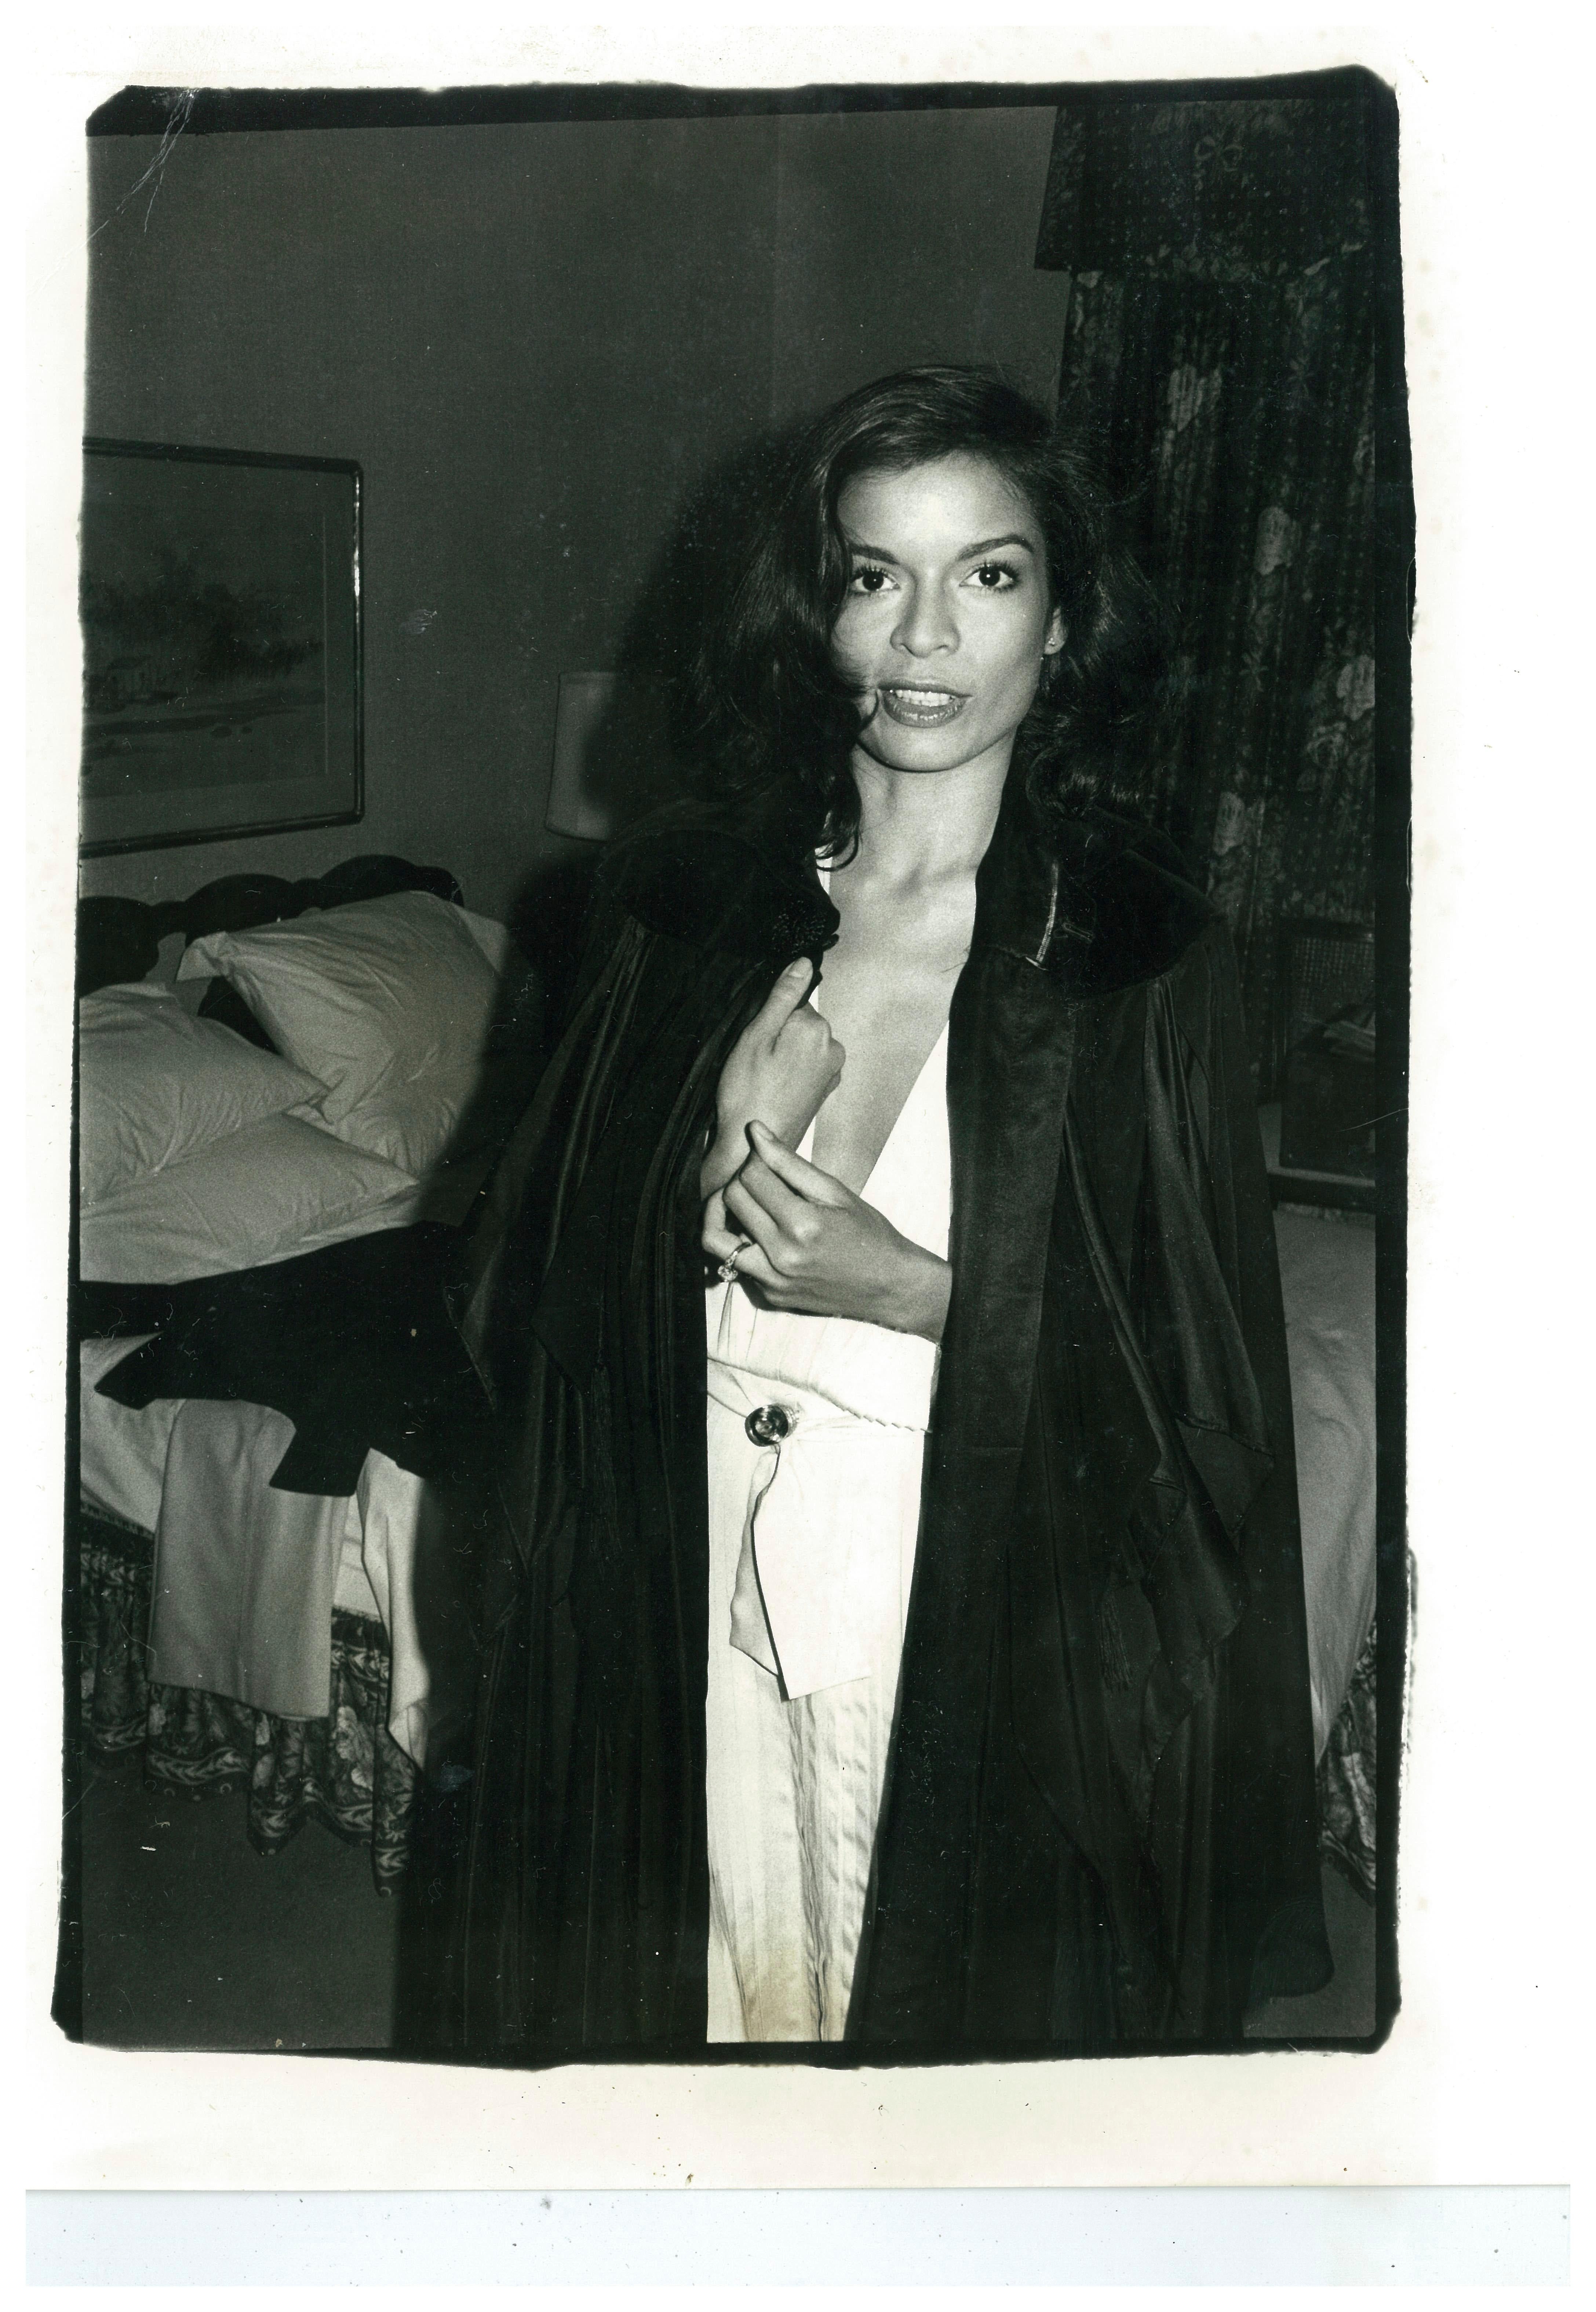 Portrait Photograph Andy Warhol - Bianca Jagger en manteau noir dans une chambre d'hôtel